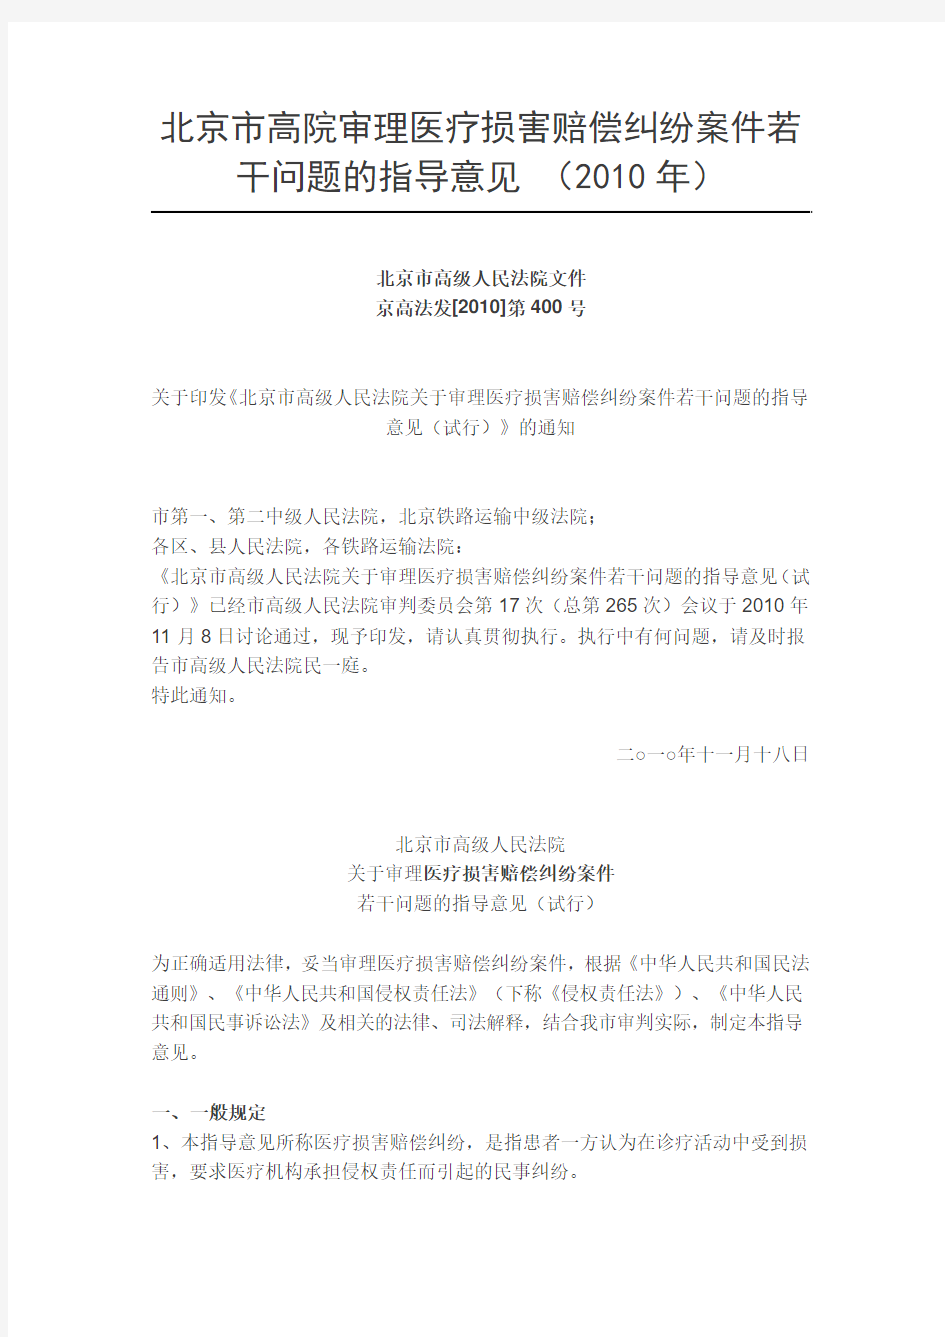 北京市北京高院审理医疗损害赔偿纠纷案件若干问题的指导意见